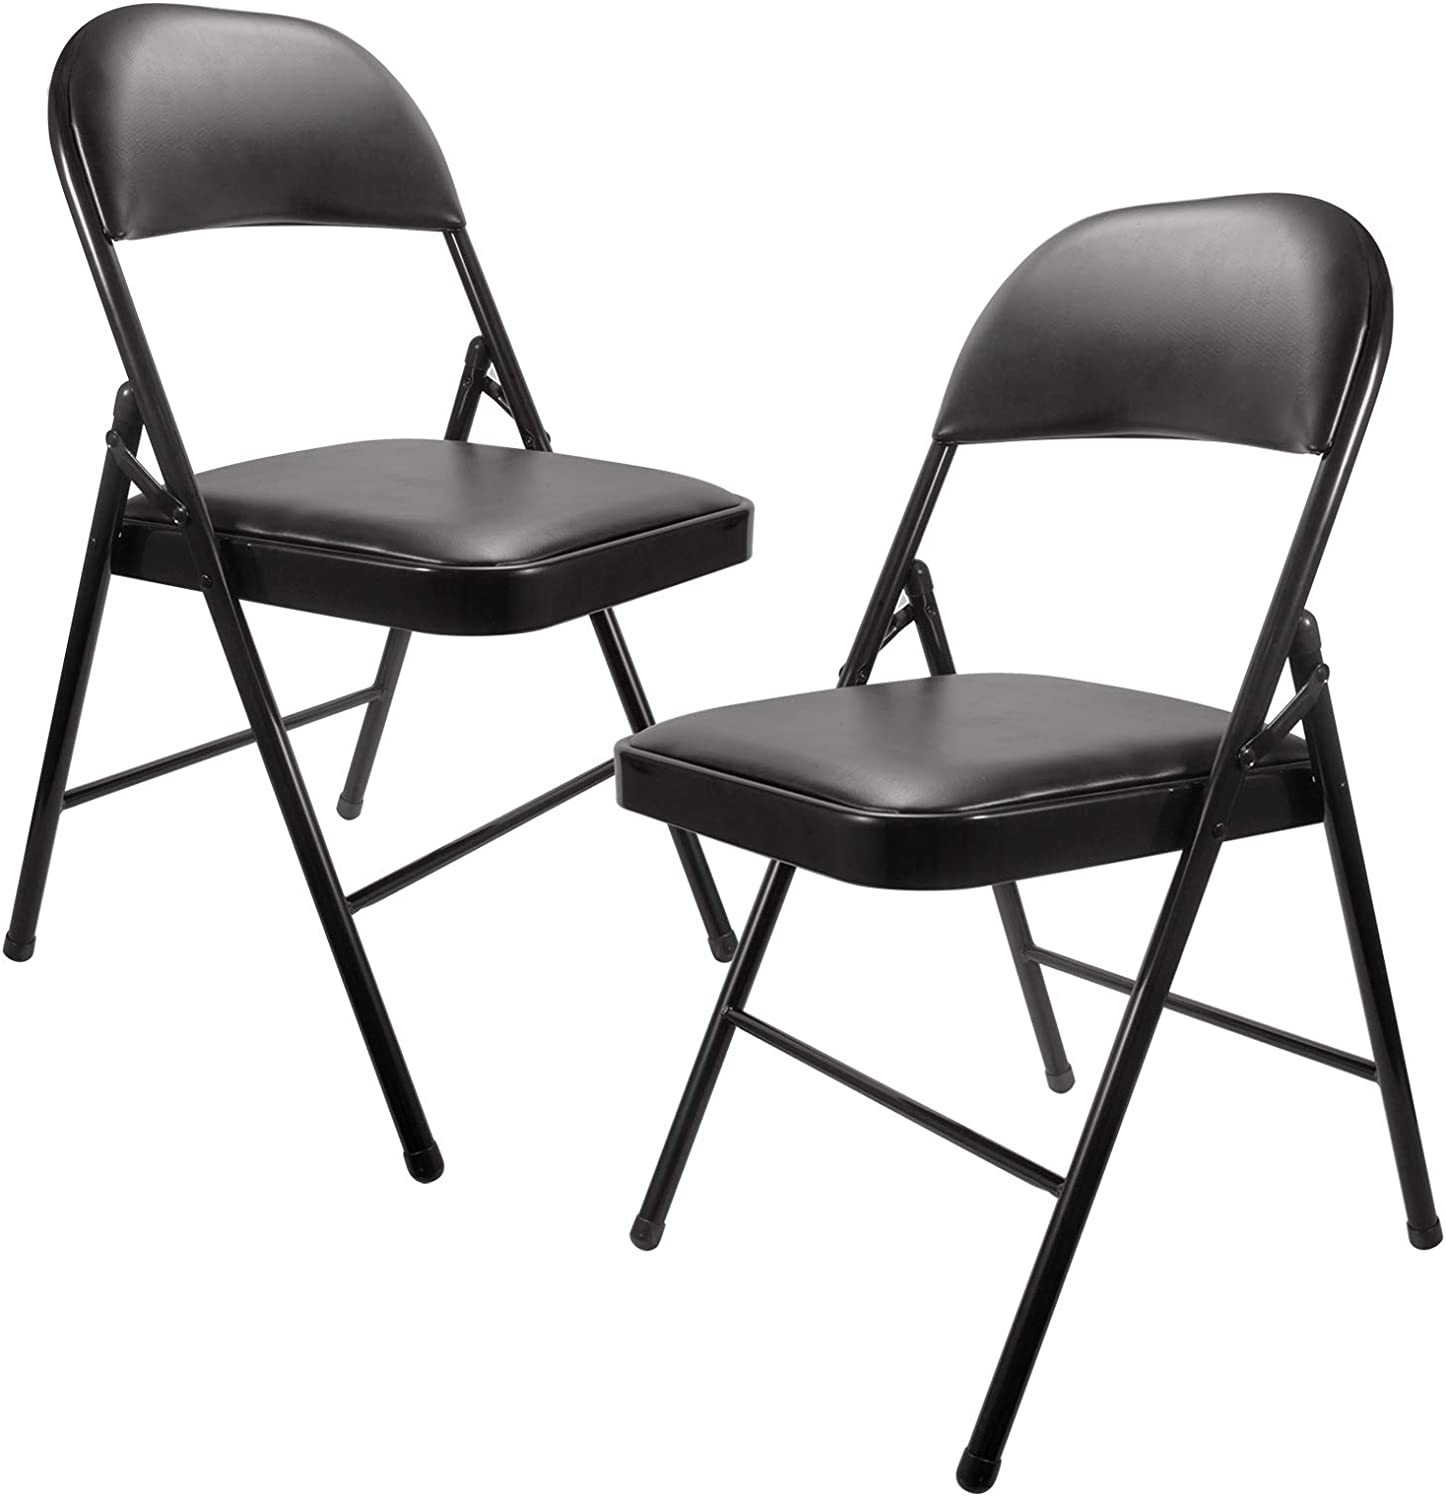 Vysoce kvalitní nábytková skládací židle s kovovým rámem Černá skládací židle s polstrovanými sedadly